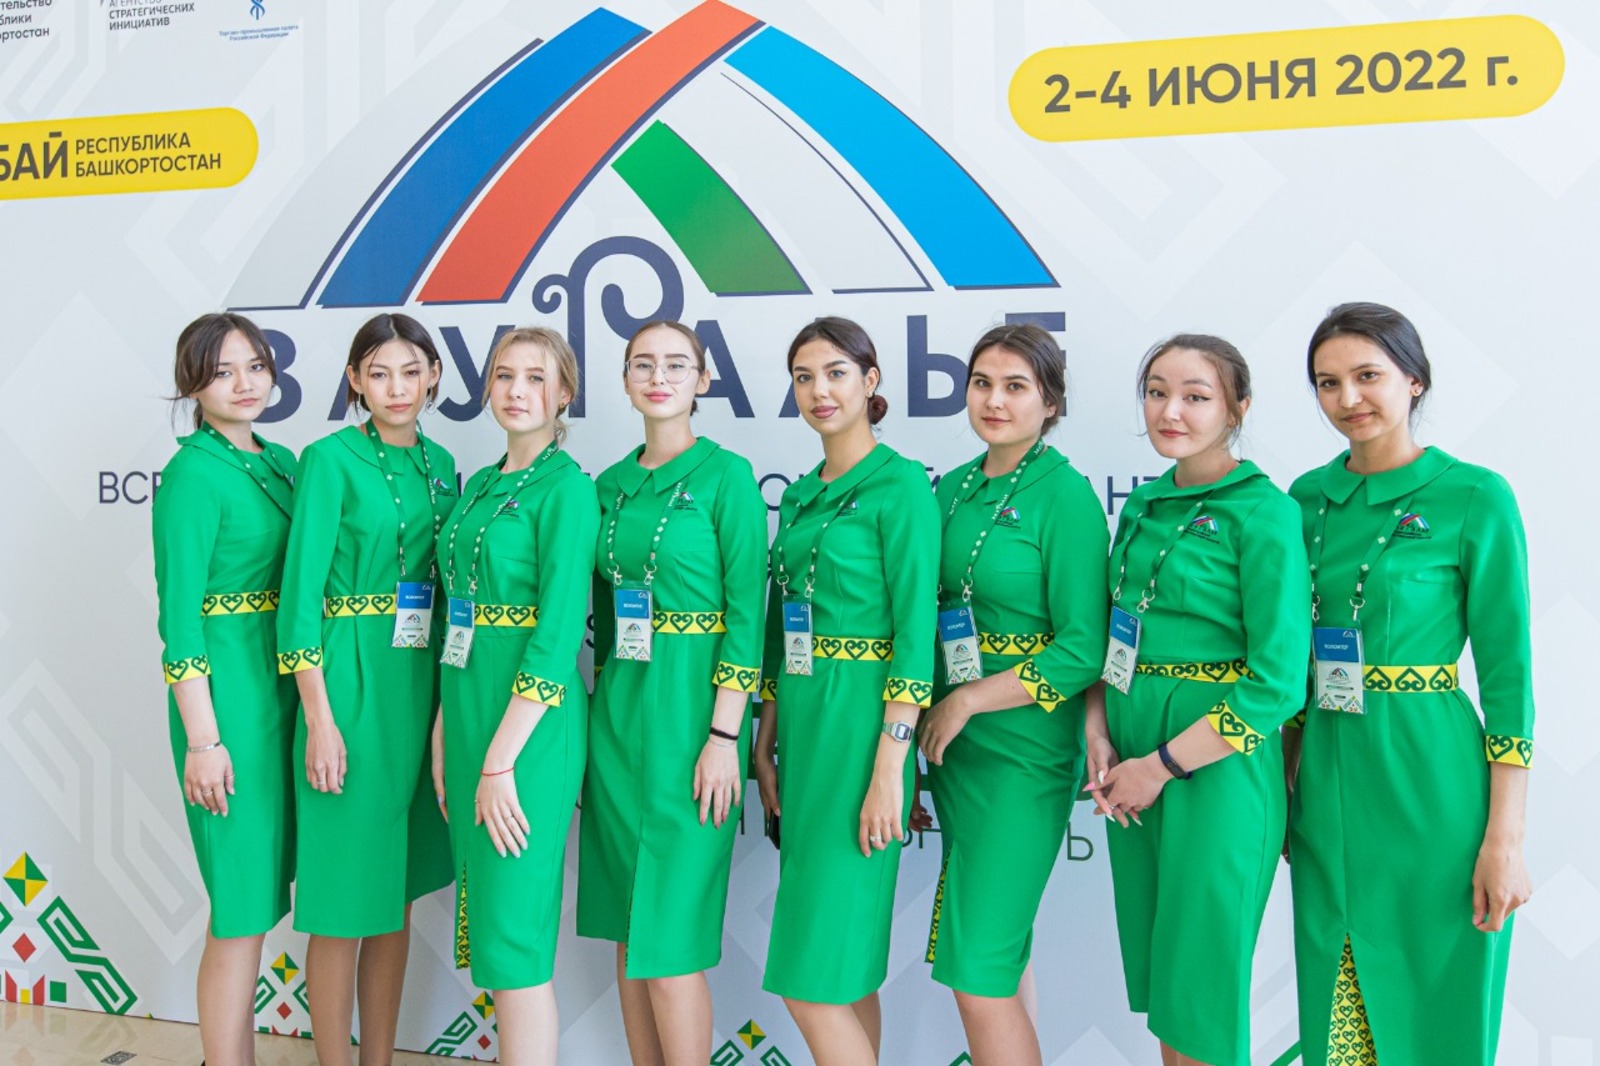 В работе инвестсабантуя помогают 200 волонтёров Башкортостана